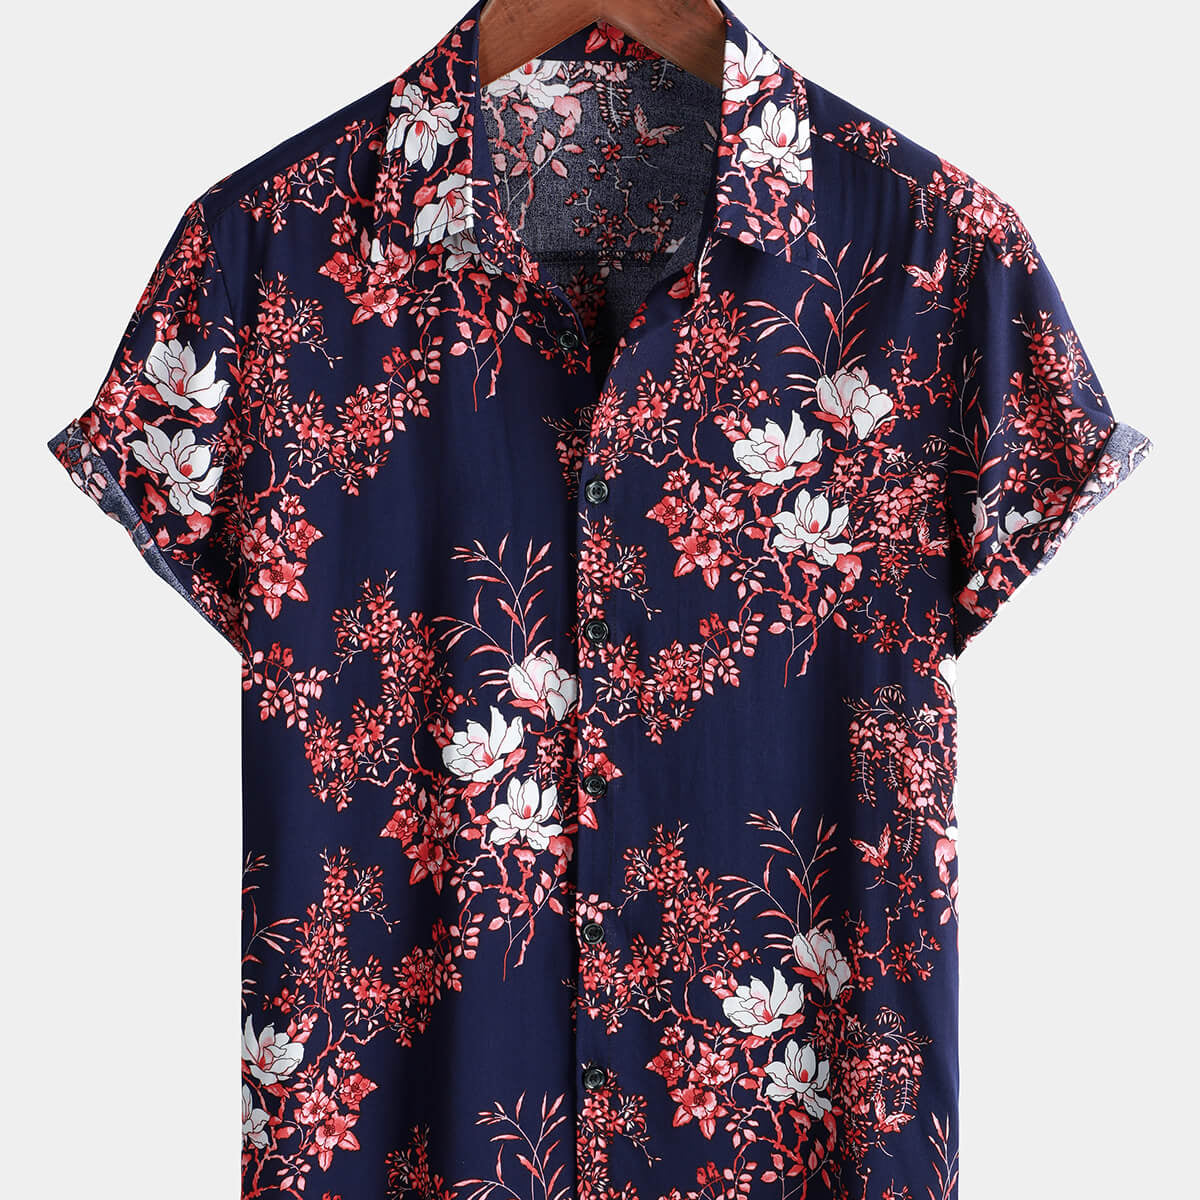 Men's Floral Beach Short Sleeve Navy Blue Hawaiian Shirt